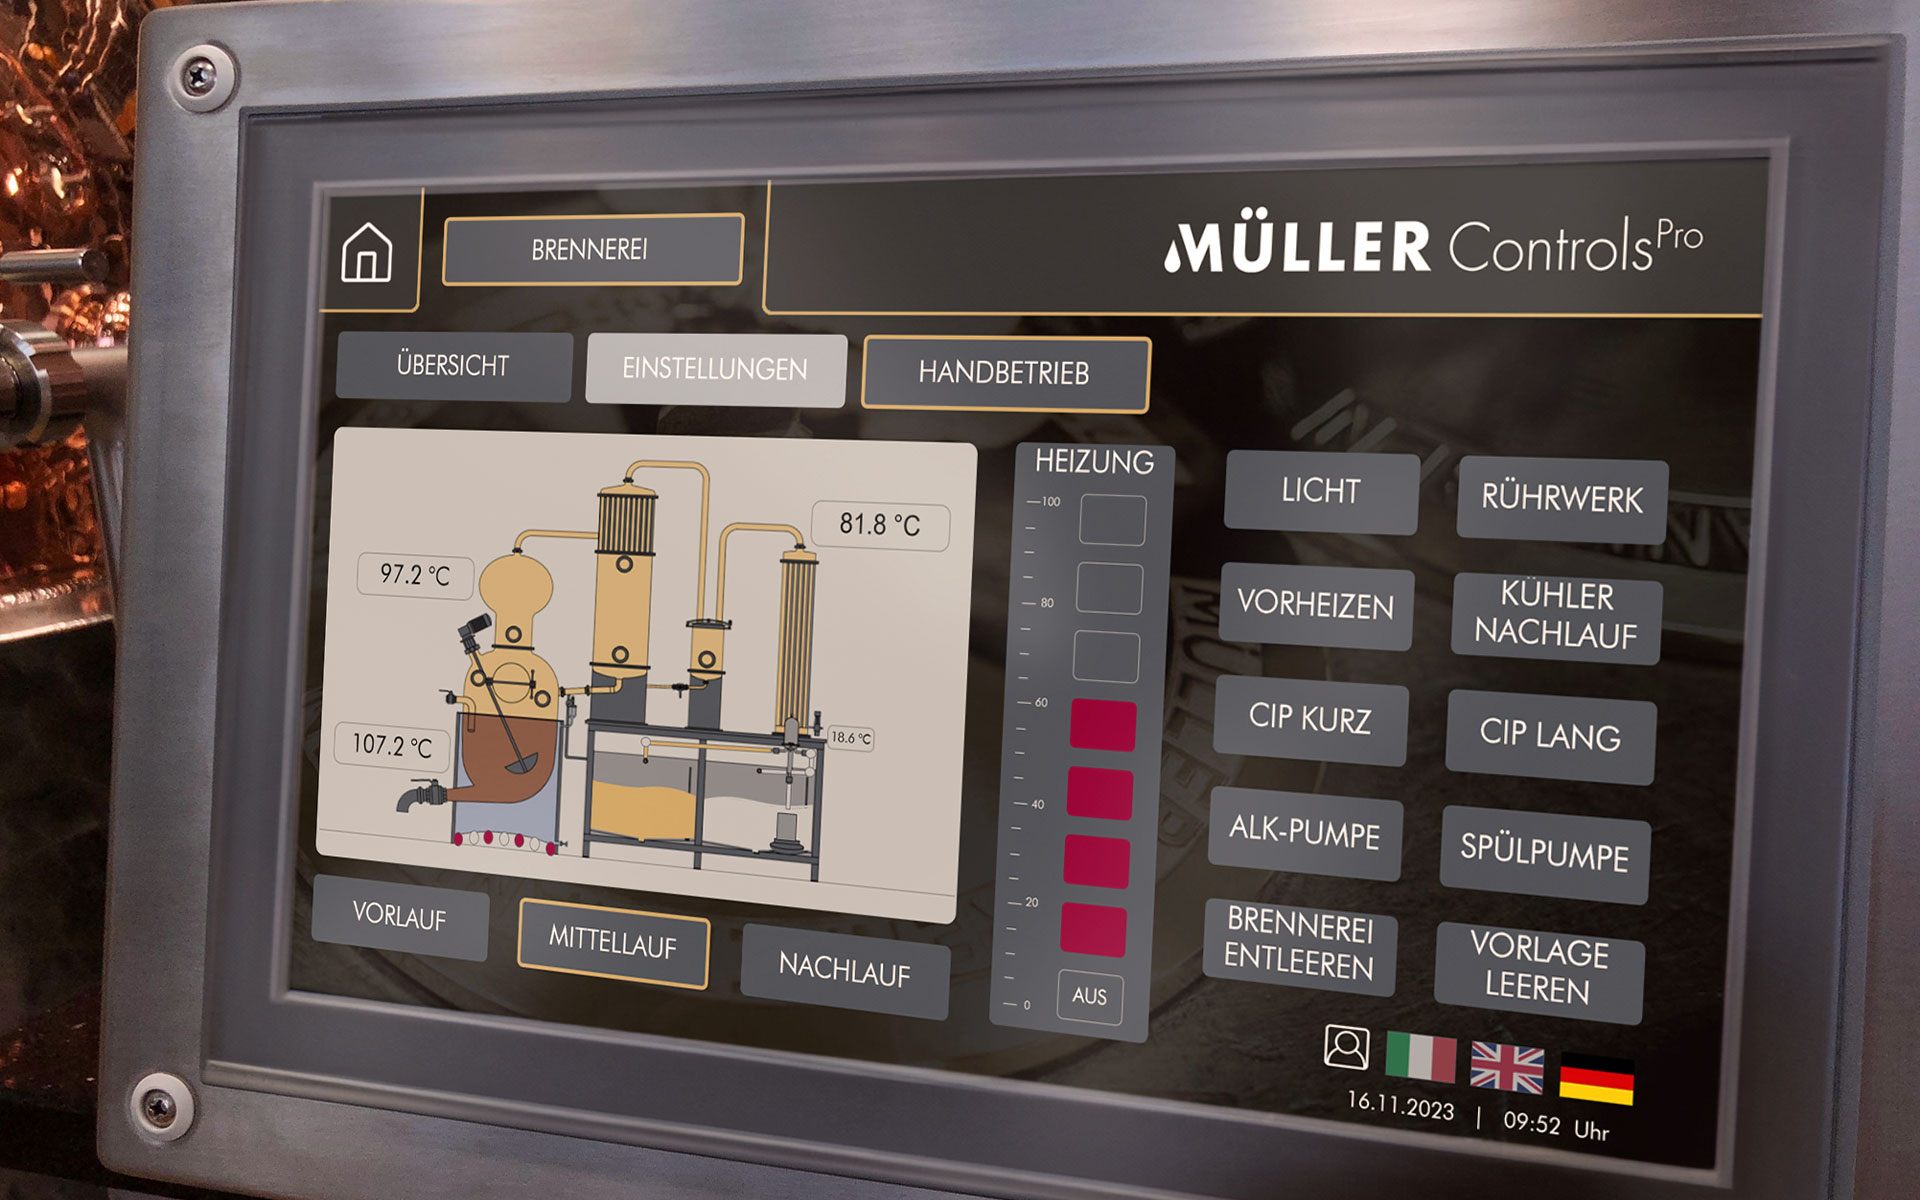 pro-mueller-controls-brennereianlagensteuerungen-automation-1920x1200px-04